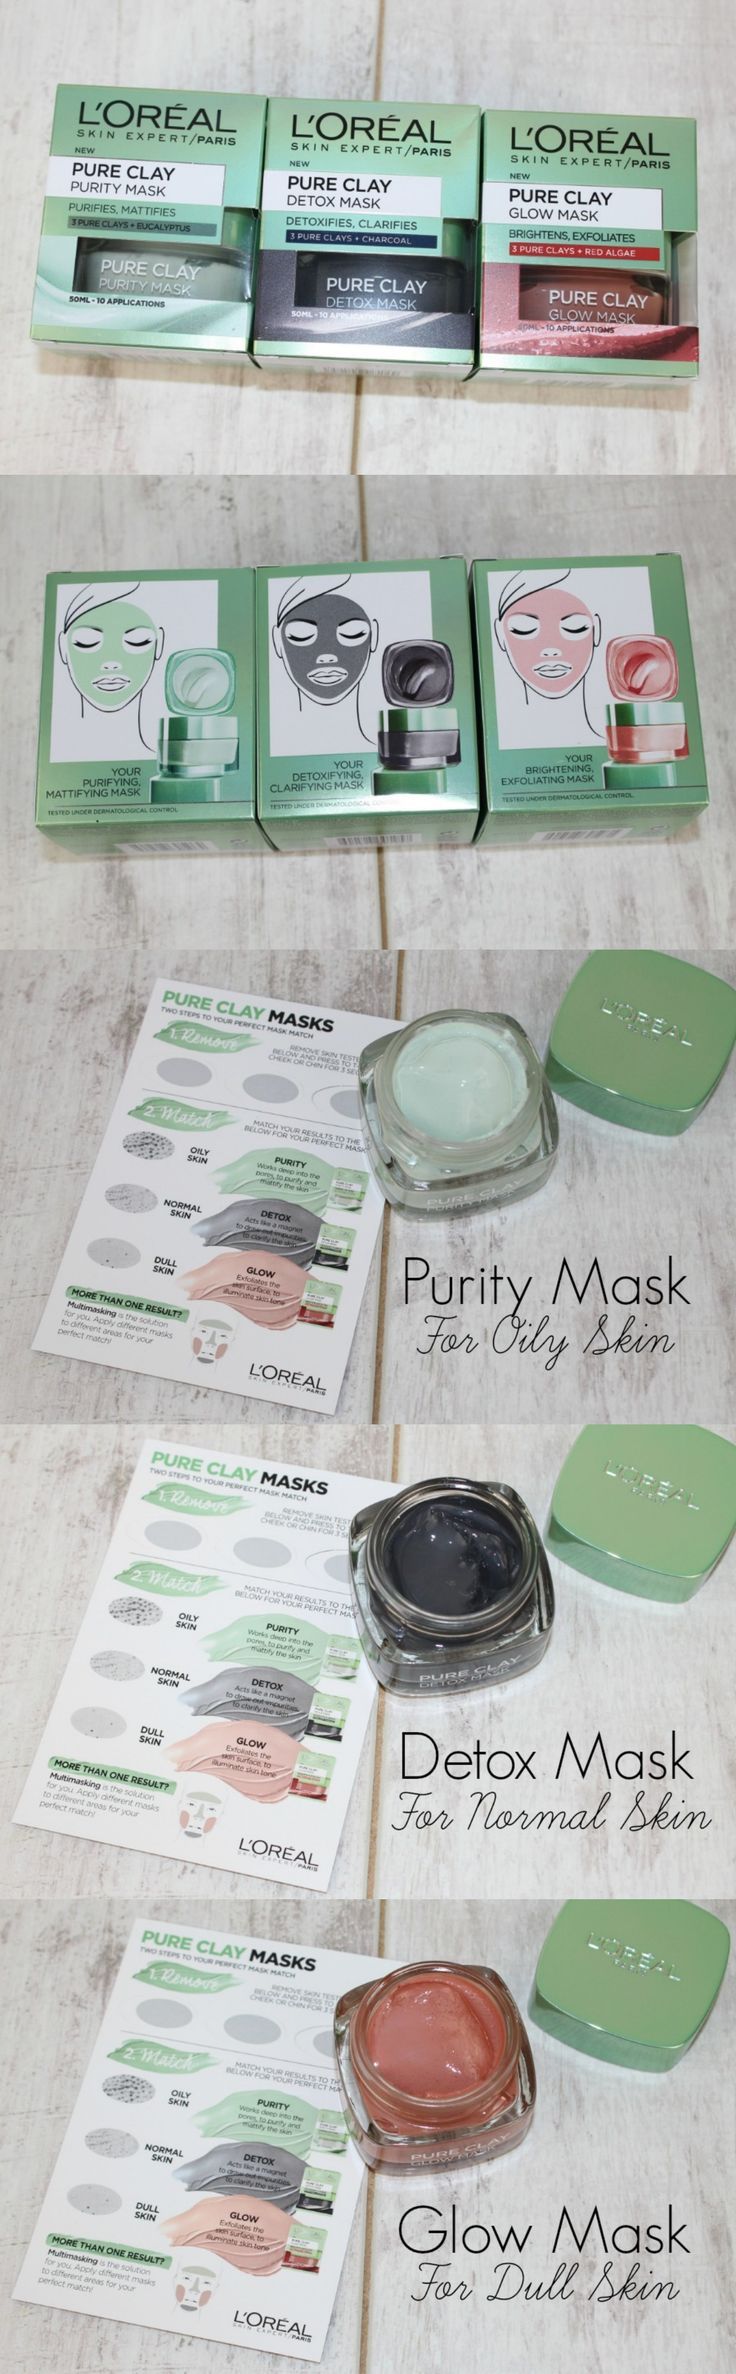 L’Oreal Pure Clay Masks